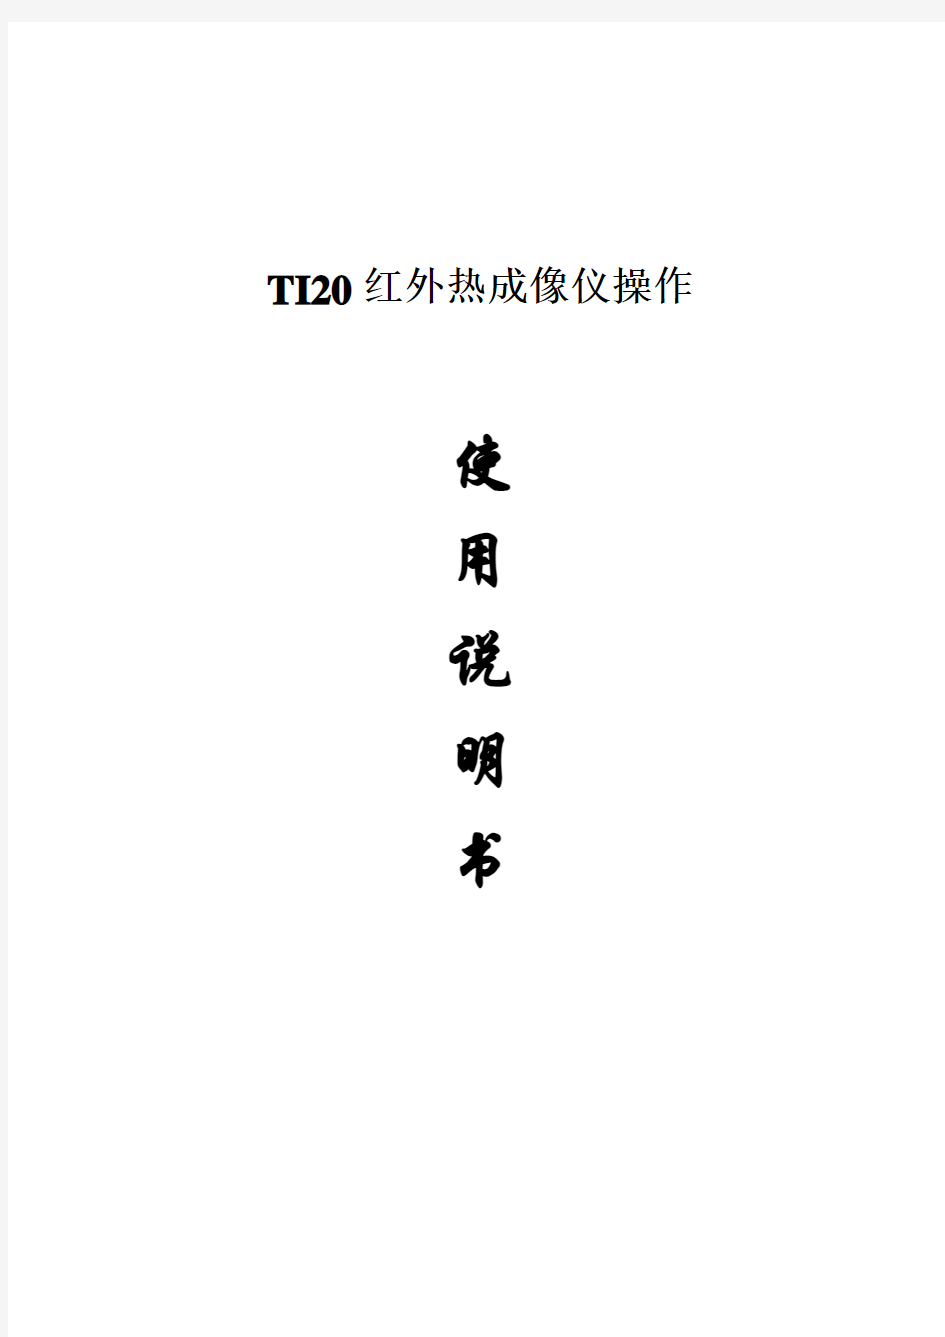 2017年TI20红外热成像仪操作使用说明(word版本)